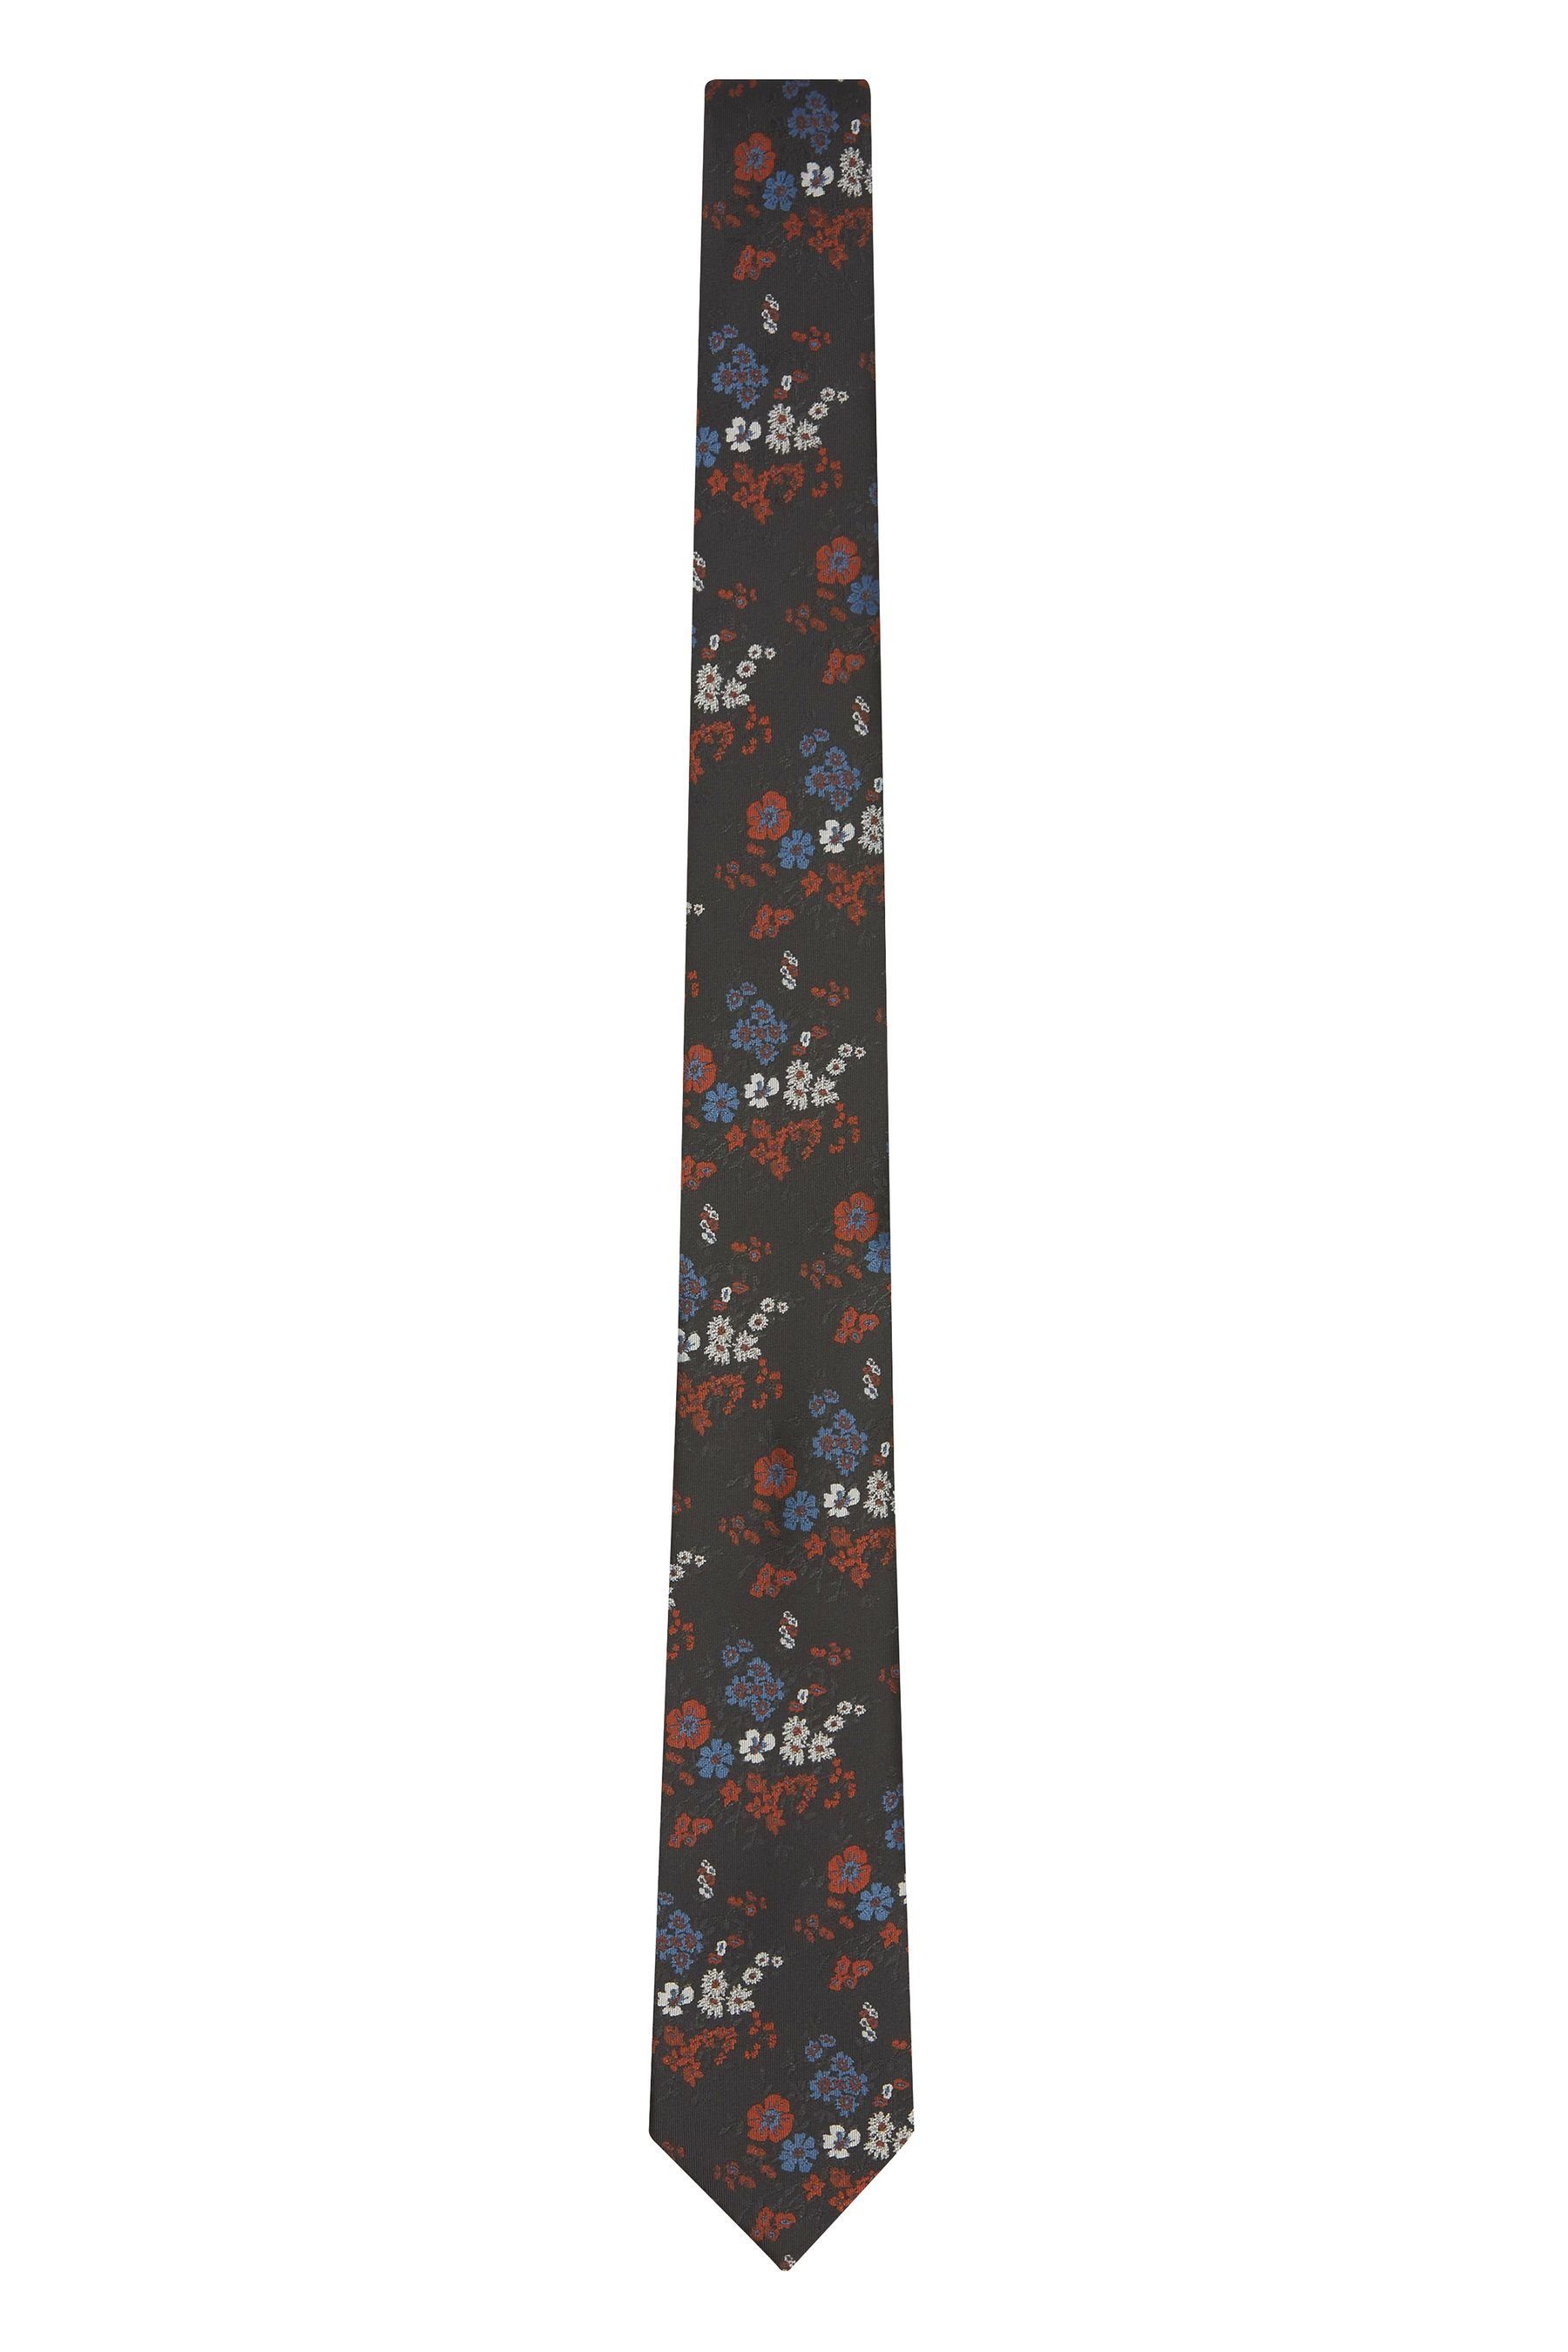 Neueste Artikel von Next Krawatte Krawatte Gemusterte Brown Black/Rust (1-St) Floral